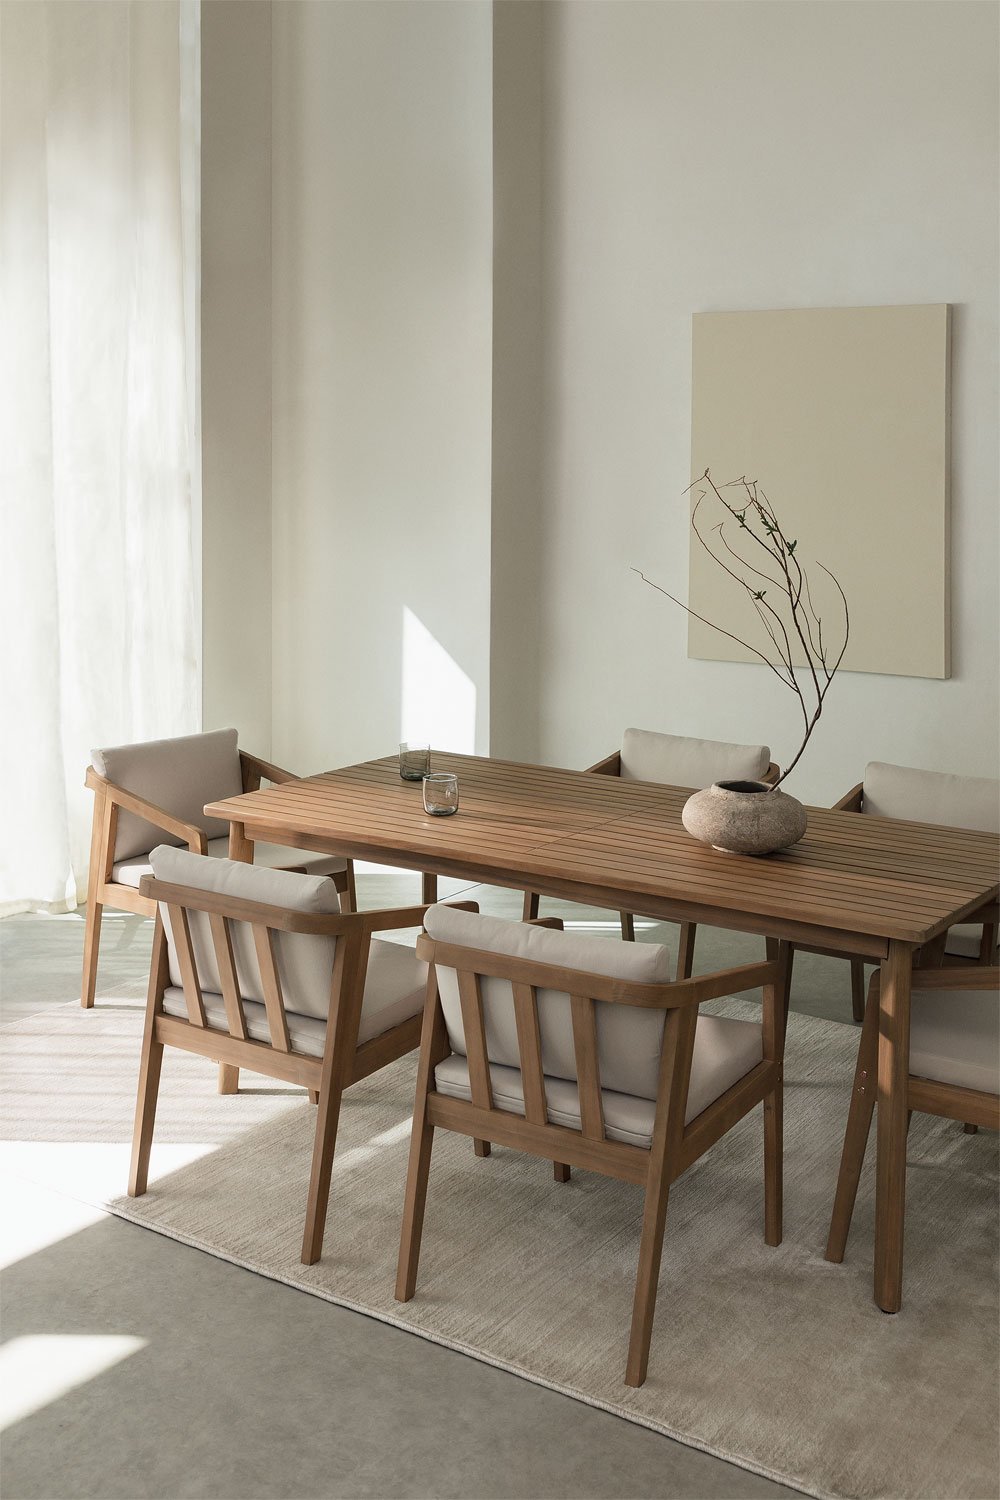 Kaela rechthoekige tafelset (180x90 cm) en 6 acaciahouten eetkamerstoelen, galerij beeld 1